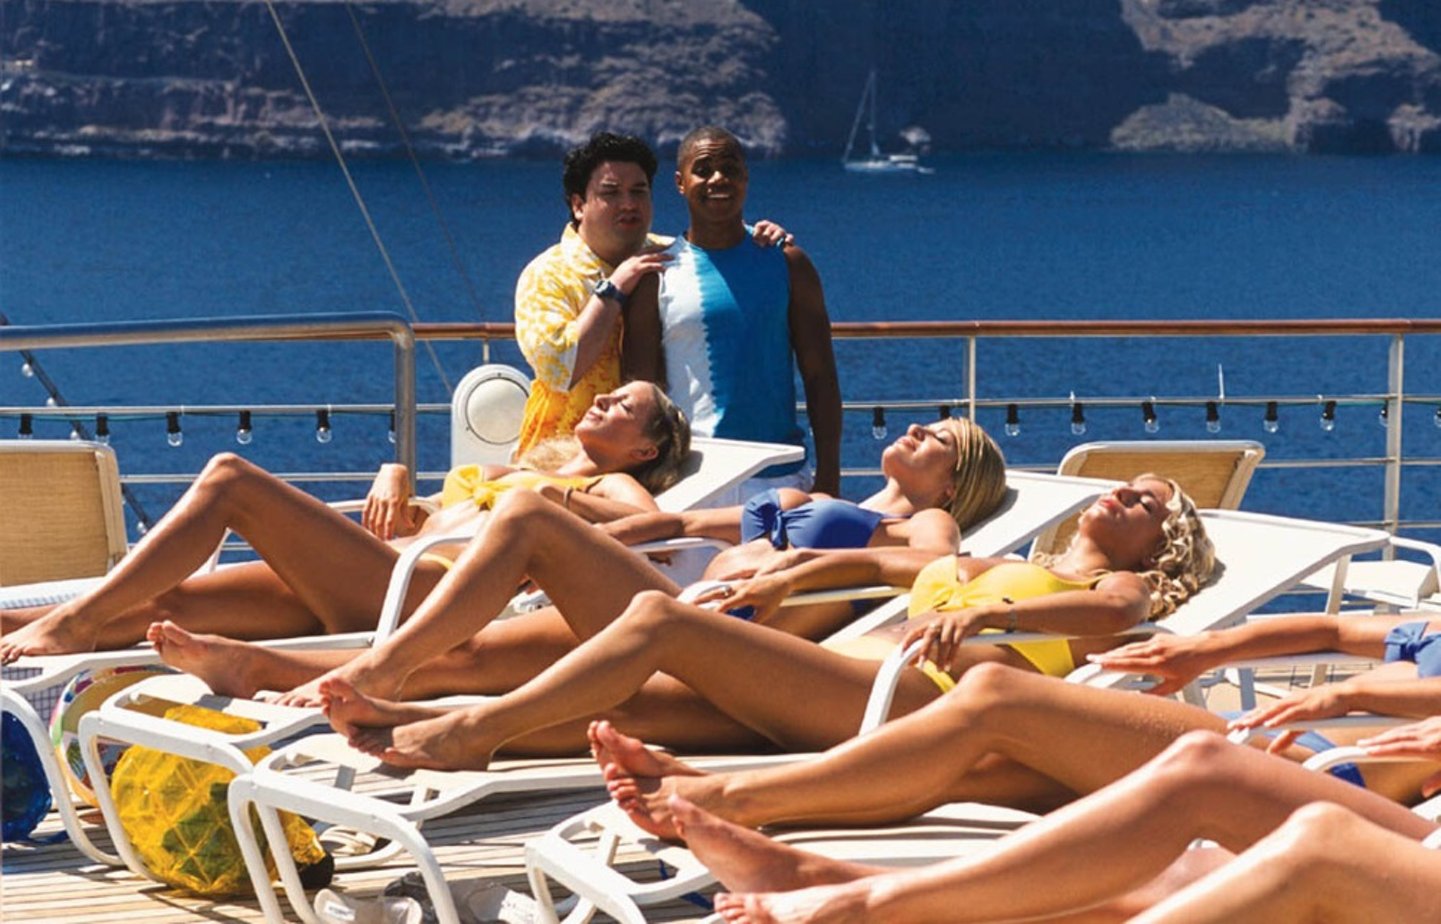 1 морское приключение. Victoria Silvstedt Boat trip 2002. Розалин Санчес Морское приключение. Голубой круиз комедия.